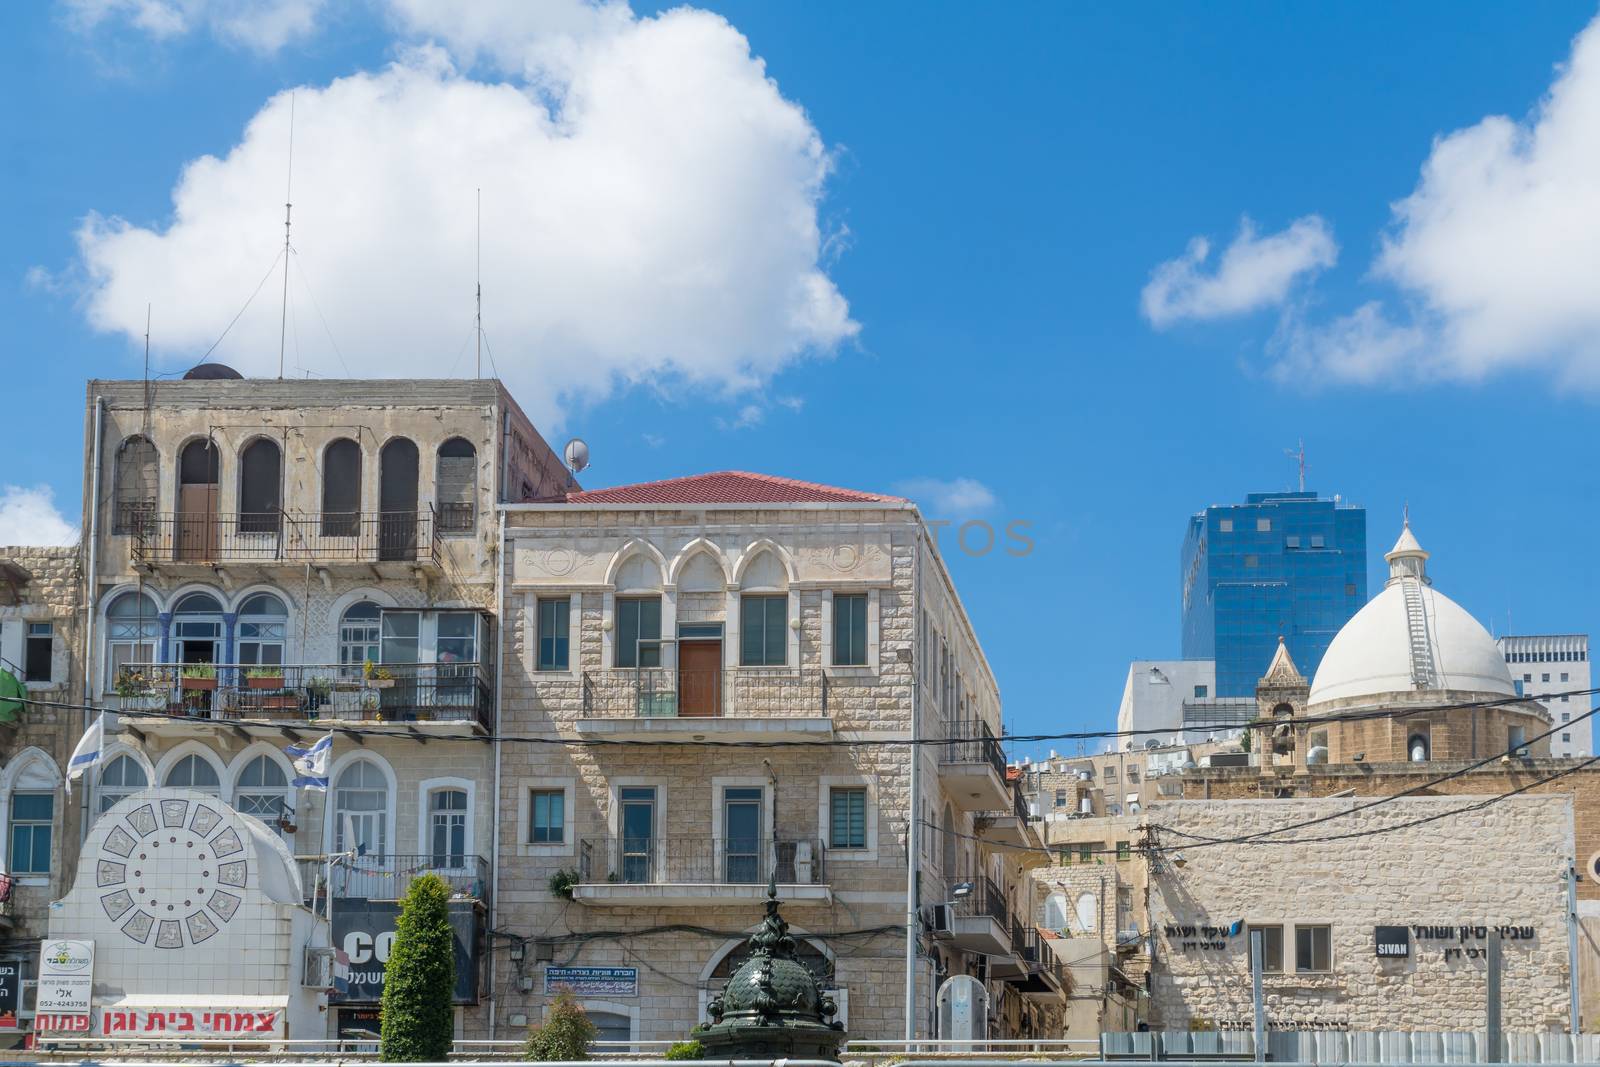 Paris square, the Maronite church in Haifa by RnDmS